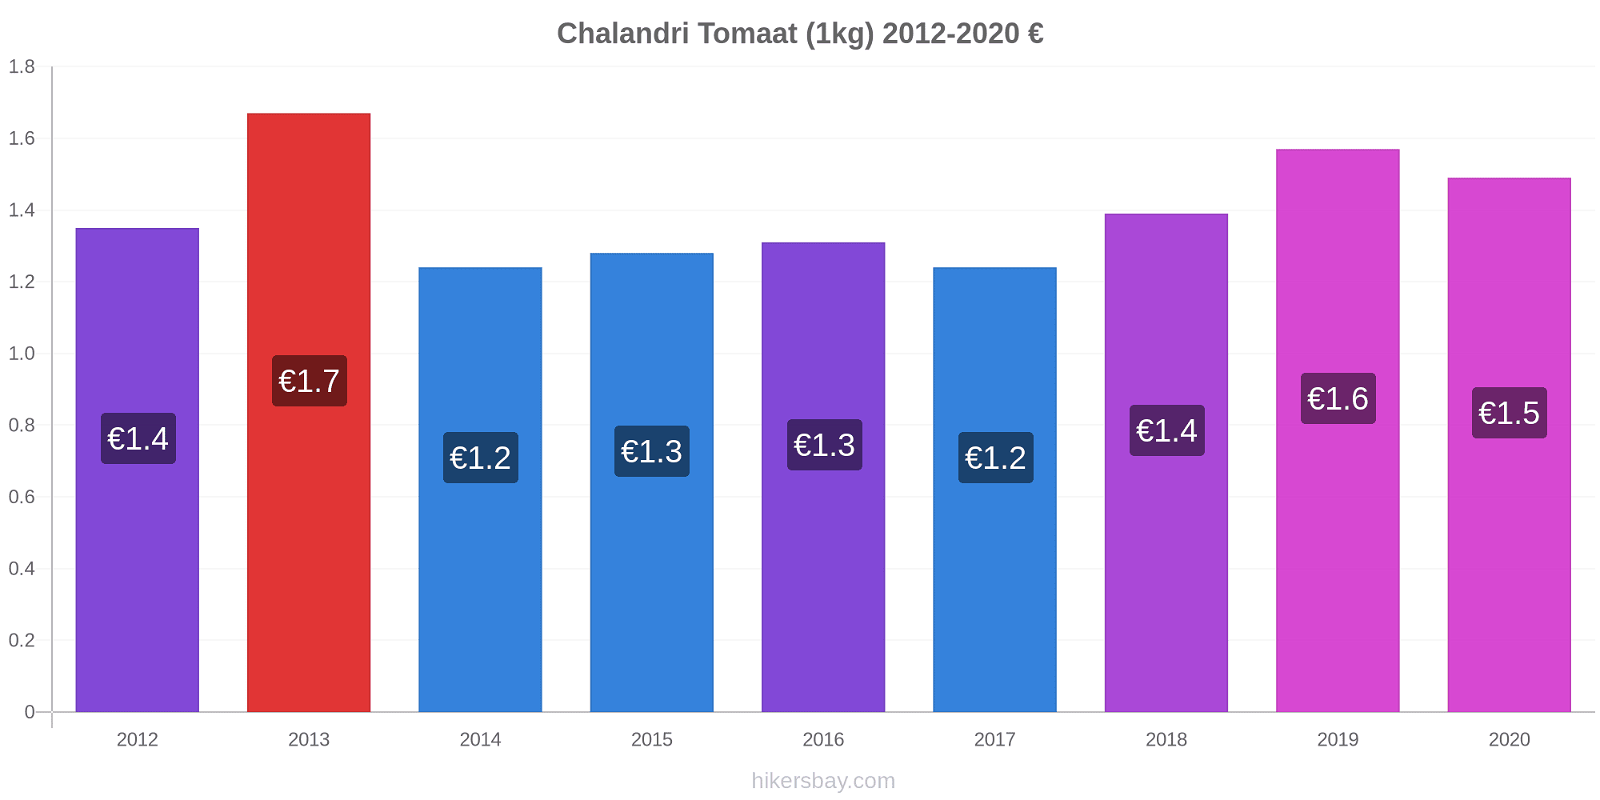 Chalandri prijswijzigingen Tomaat (1kg) hikersbay.com